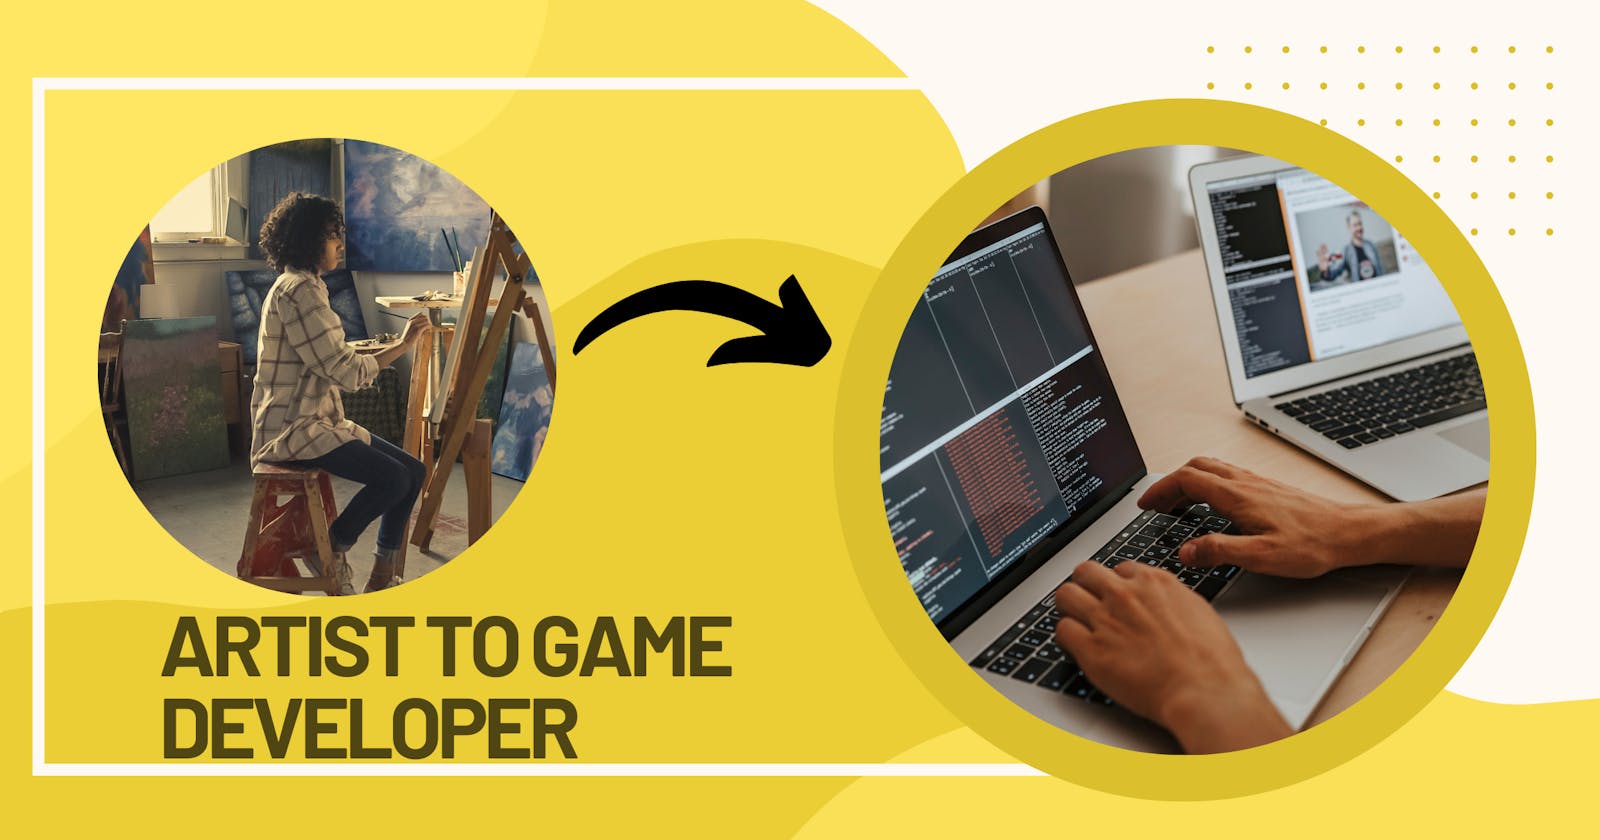 Can an artist become a game developer?